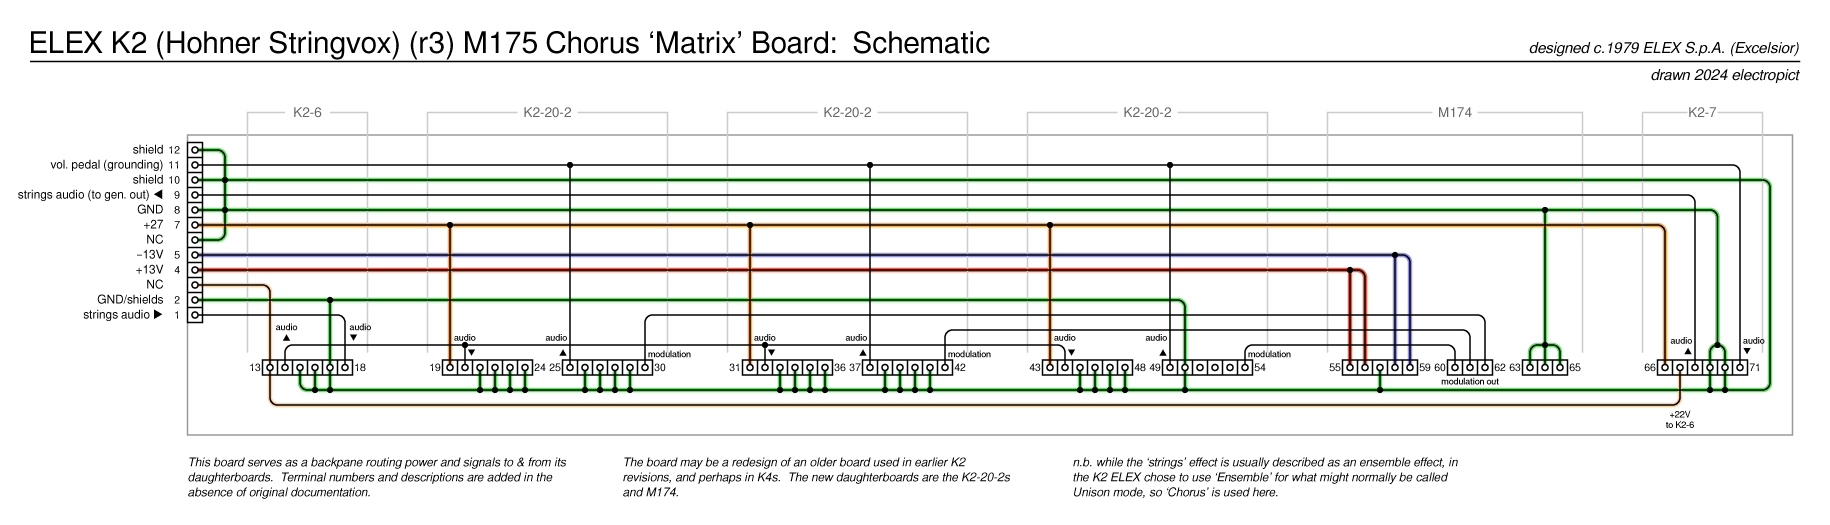 K2r3 M175 schematic